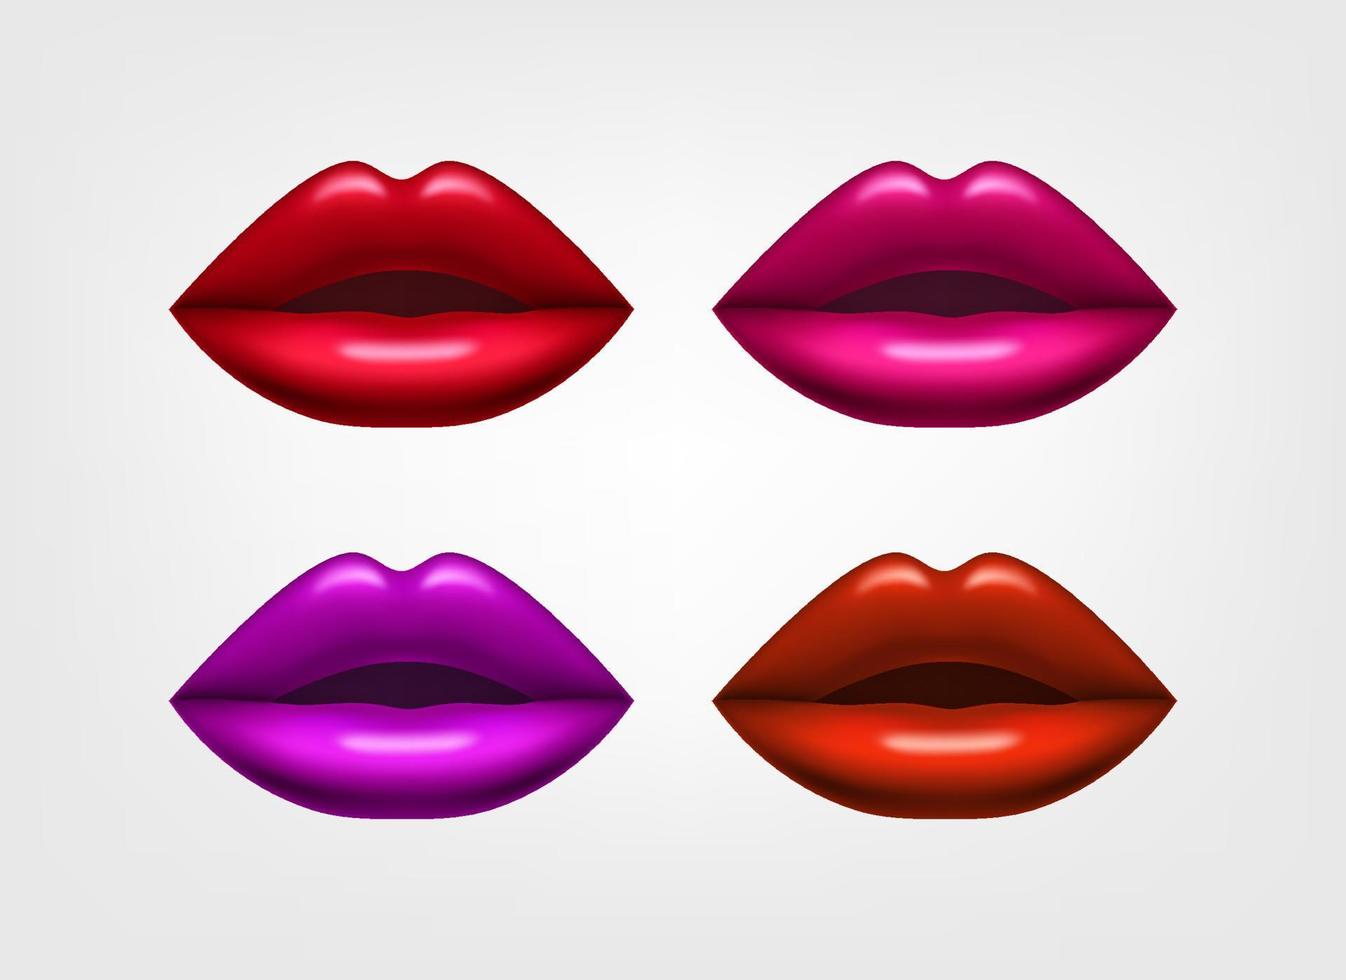 los labios de las mujeres se llenan de lápiz labial. ilustración vectorial 3d vector